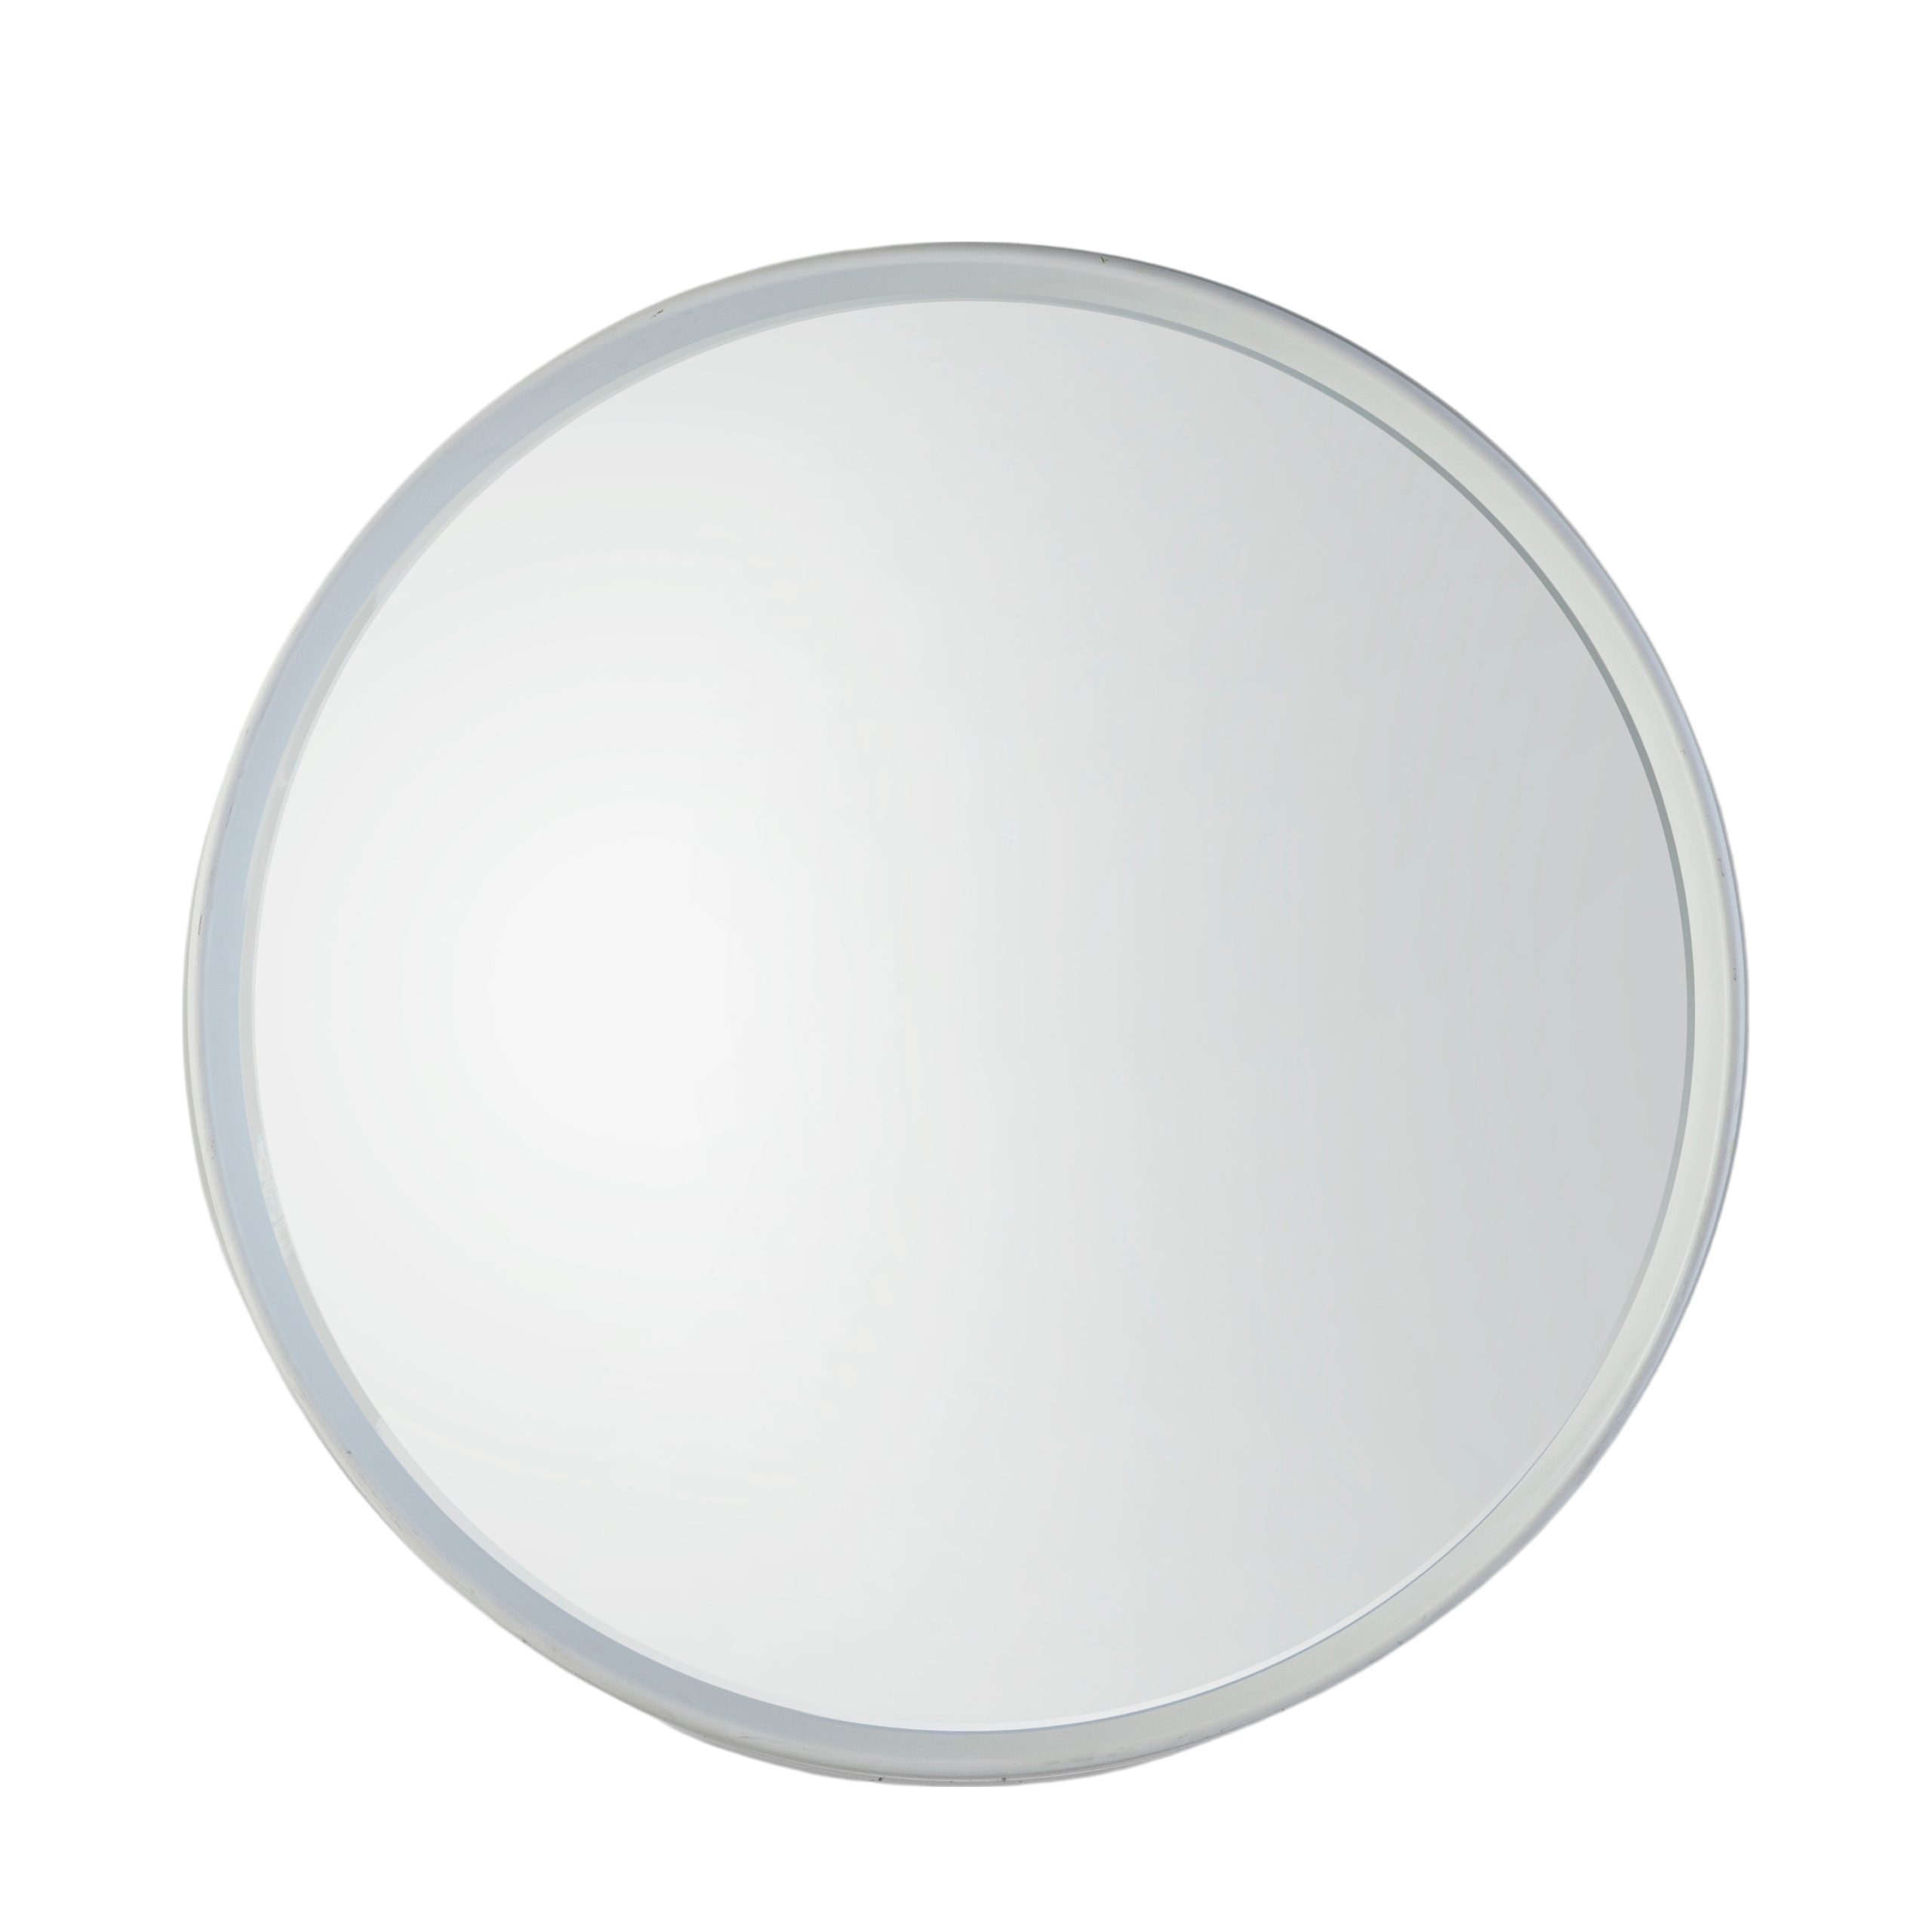 Gallery Direct Harvey Round Mirror White